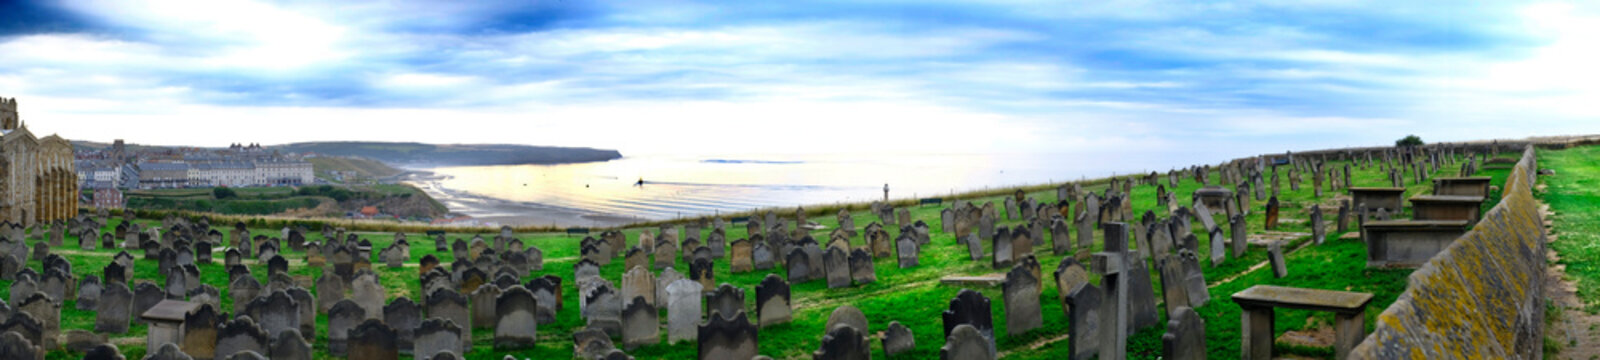 Cementerio junto al mar